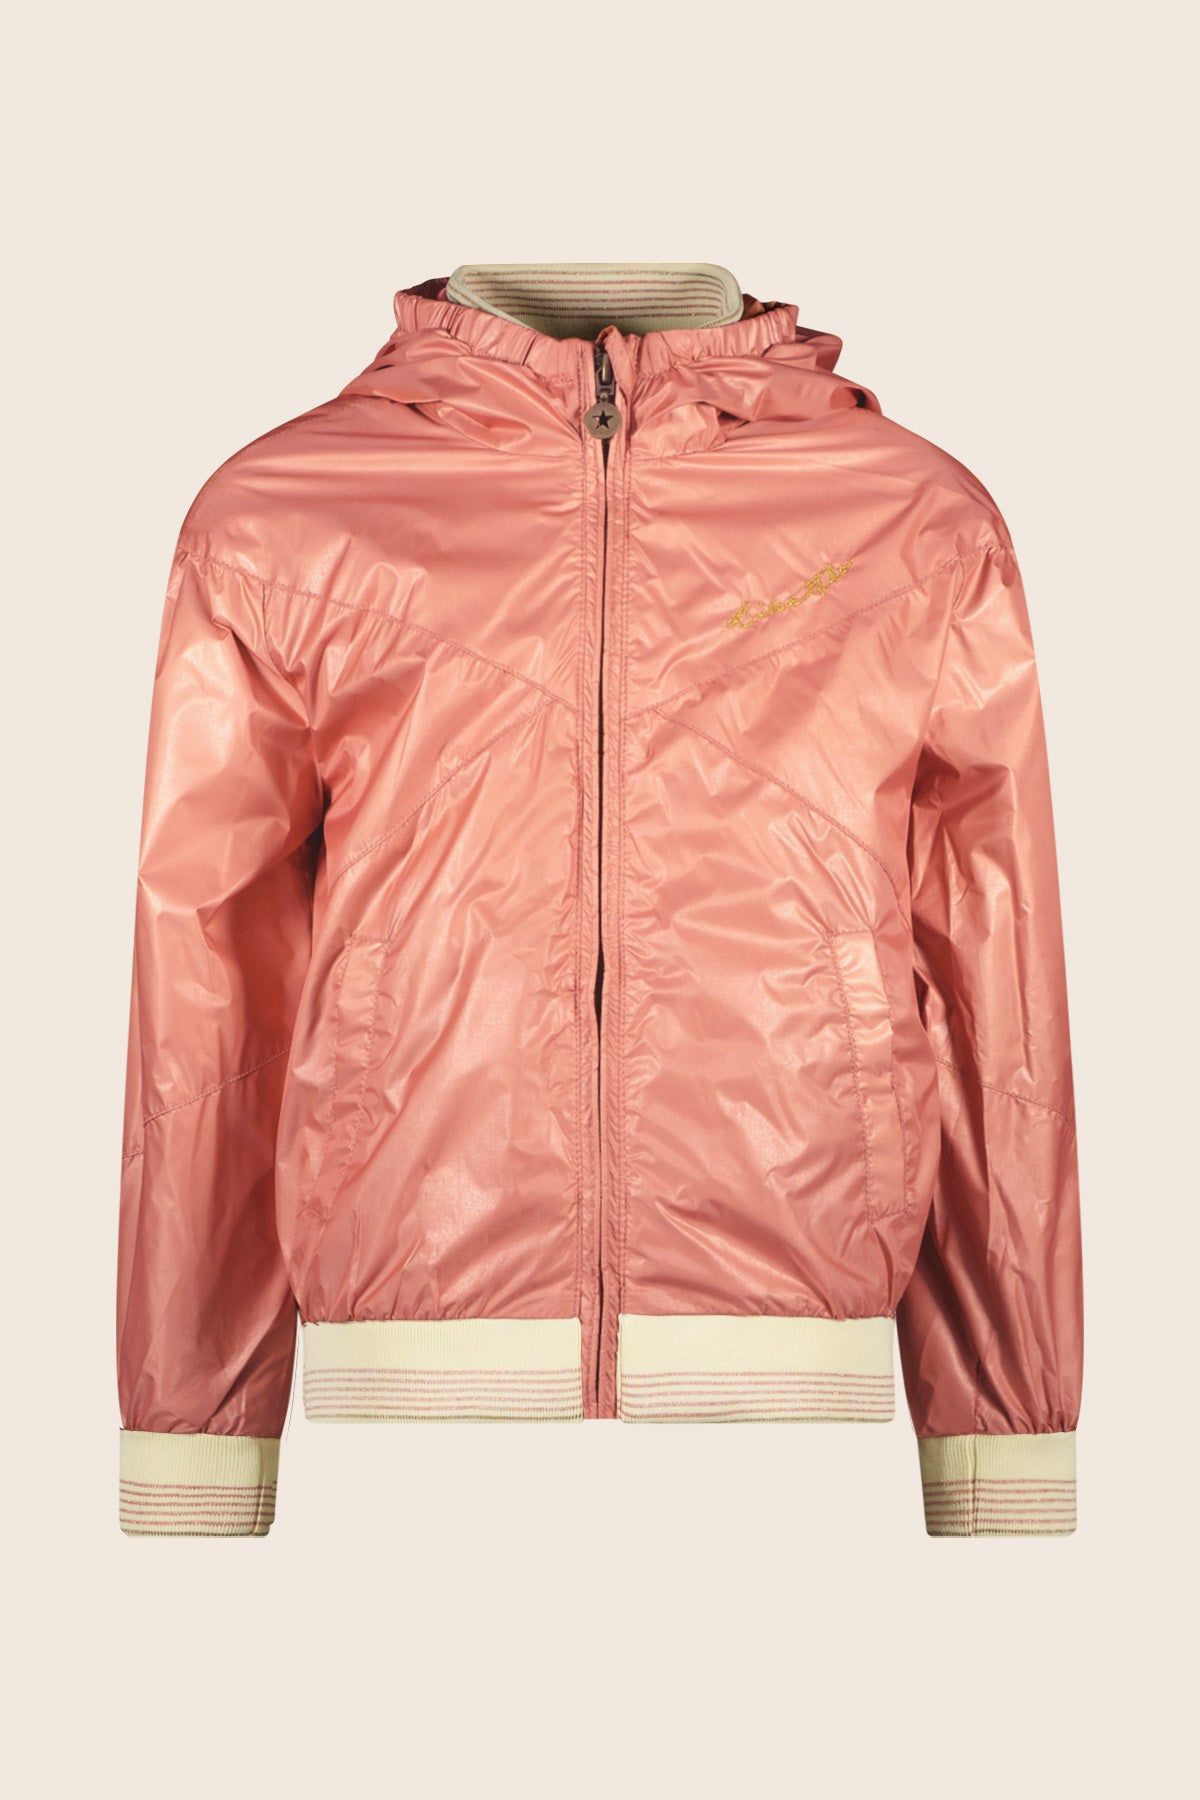 Jas Flo girls hooded summer jacket Orange